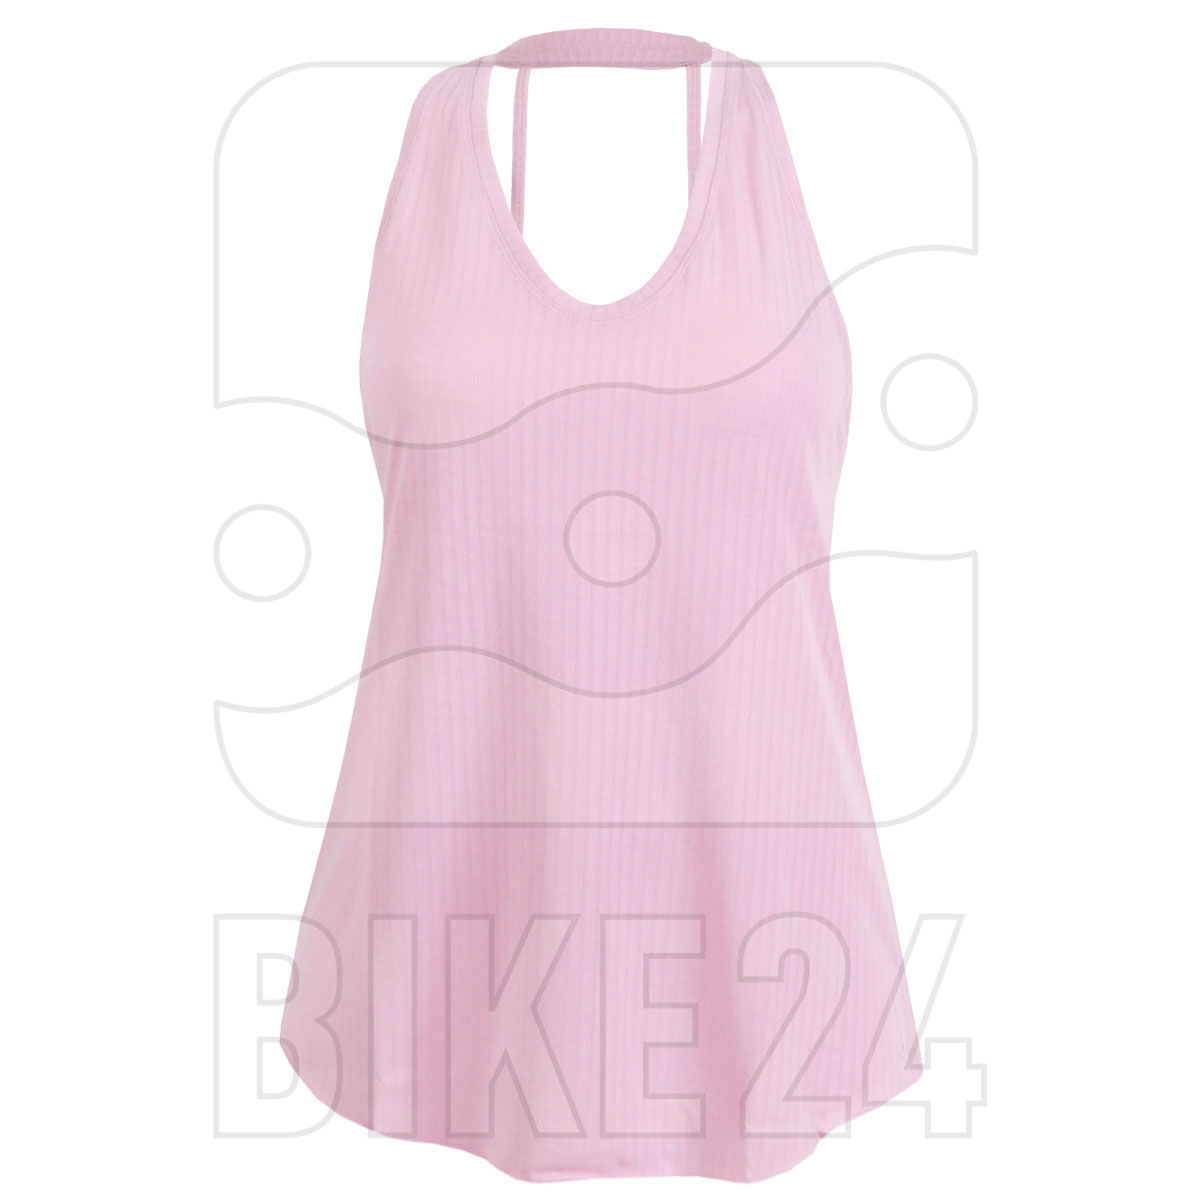 Bild von Nike Yoga Core Collection Tanktop für Damen - light arctic pink/pink foam CU5375-676